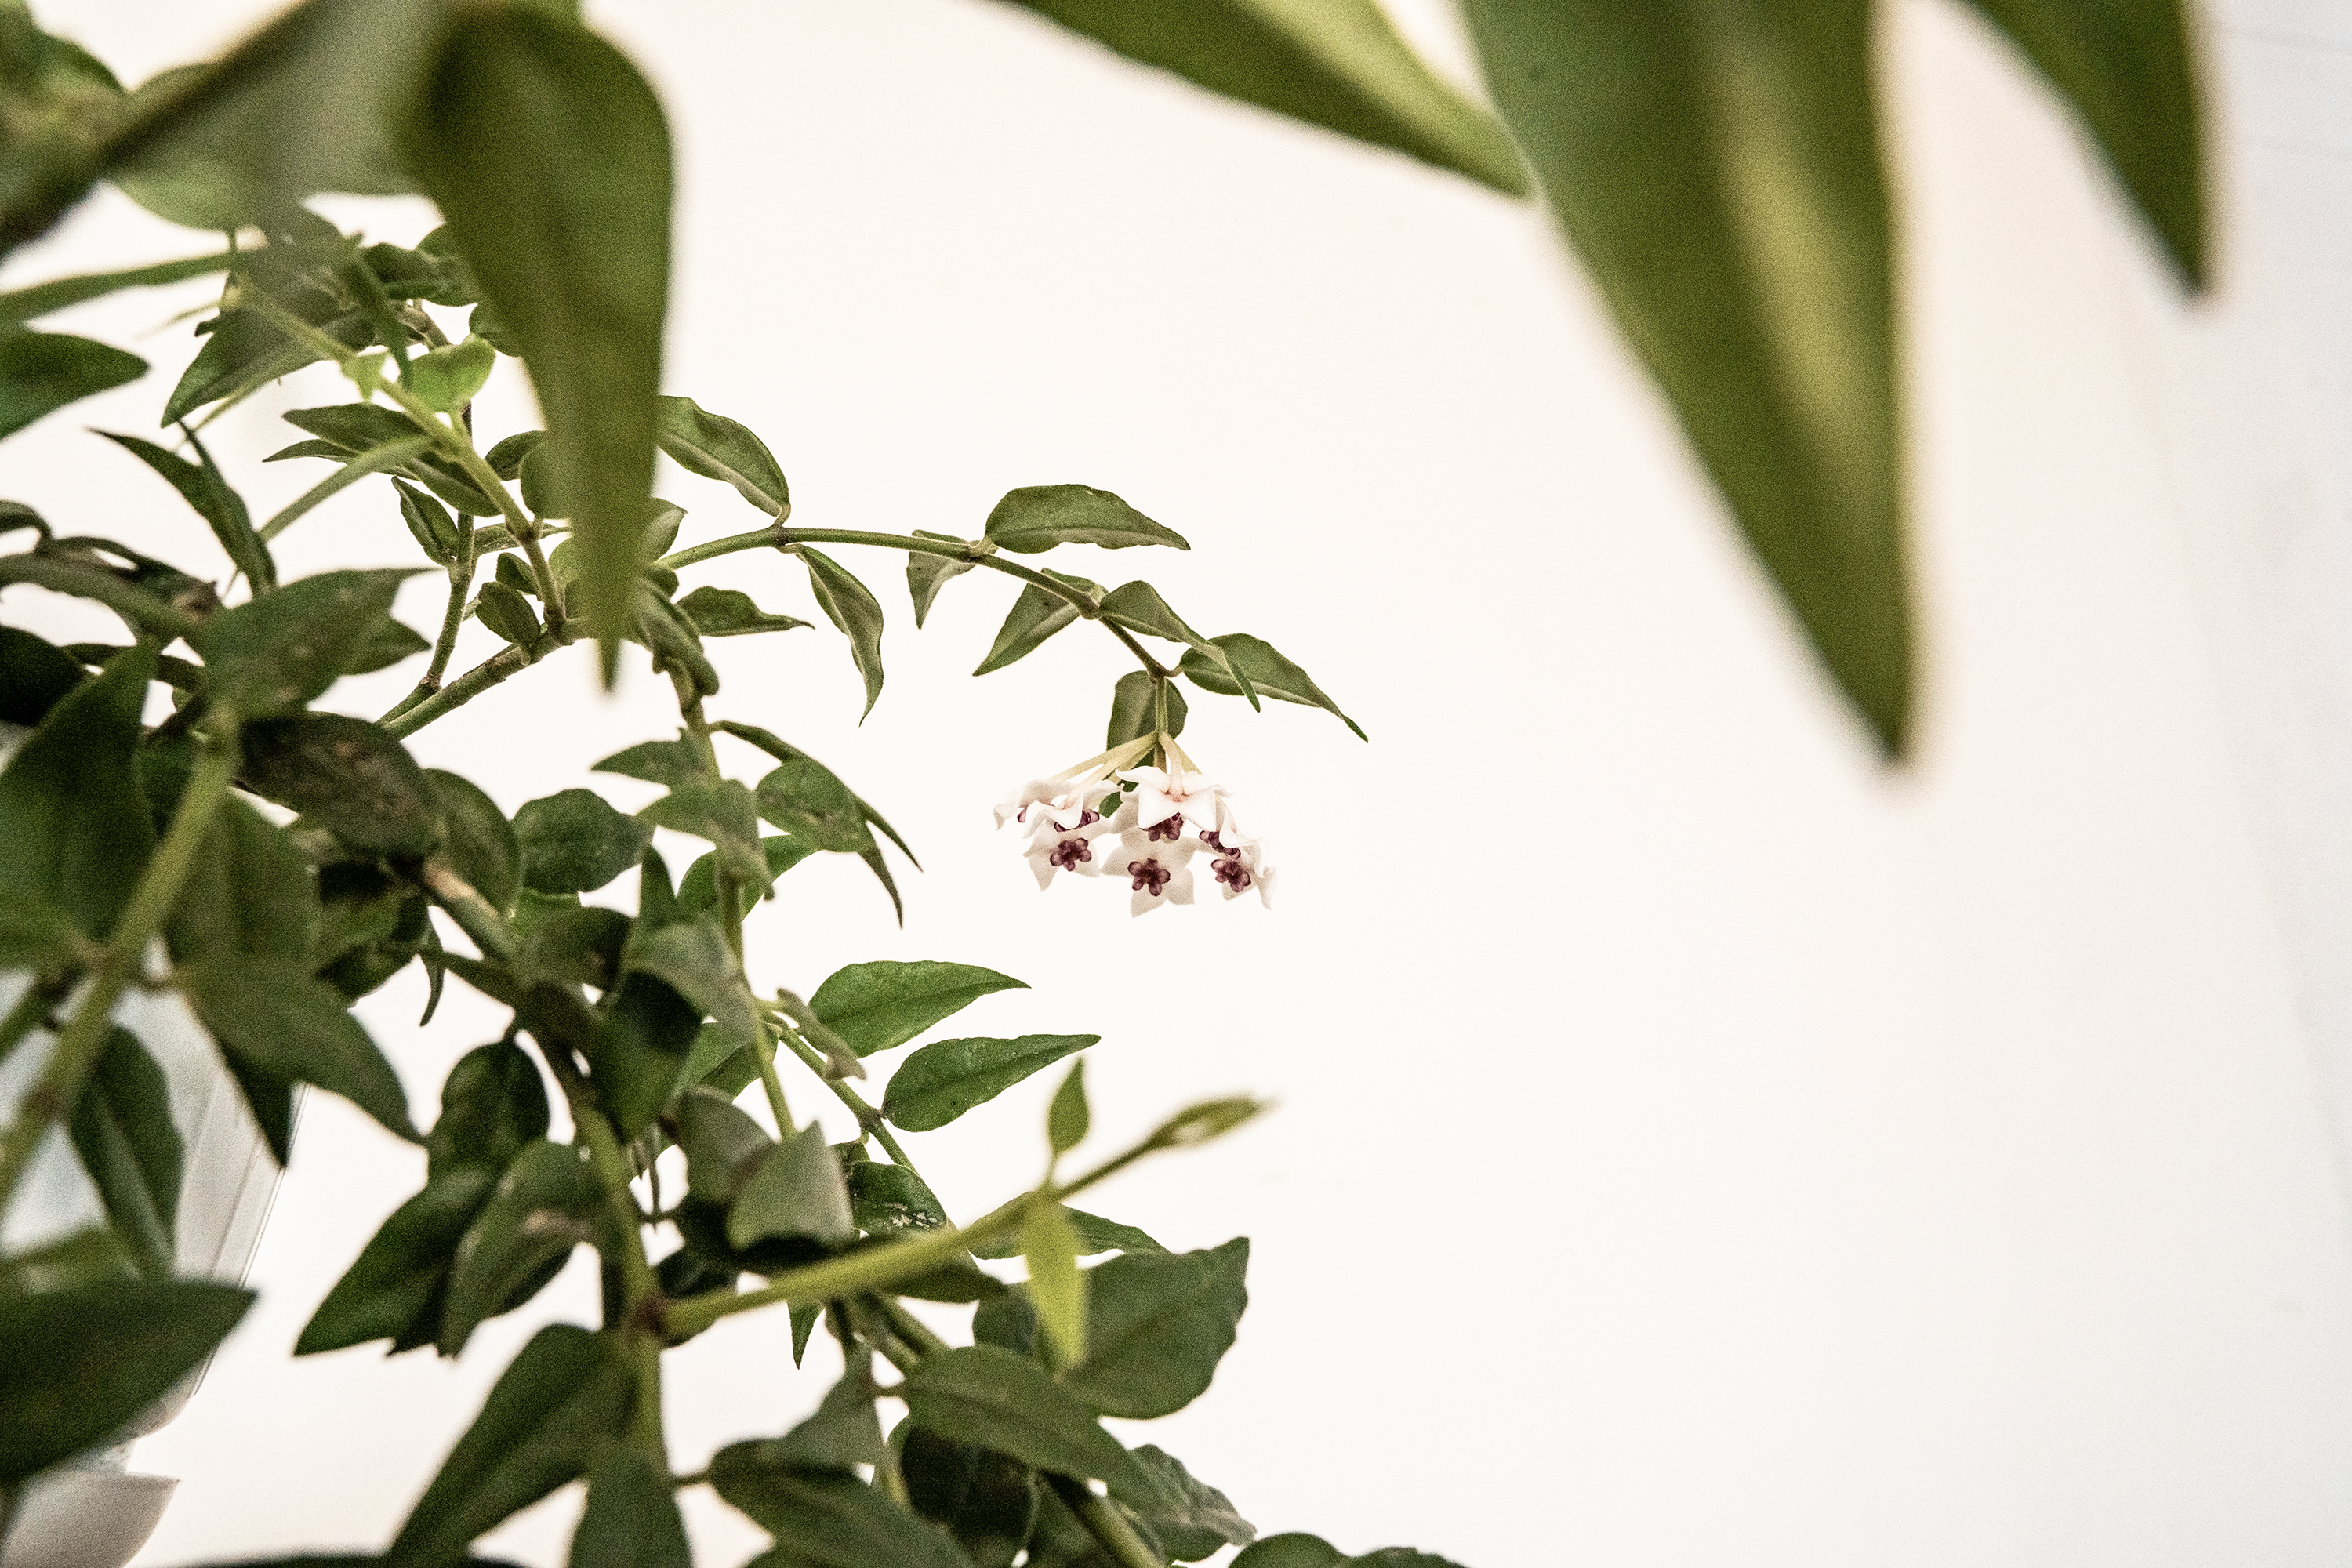 Hoya Lanceolata of Hoya Bella kamerplant gekweekt met kamerplant zaden van Blad Steen Schaar